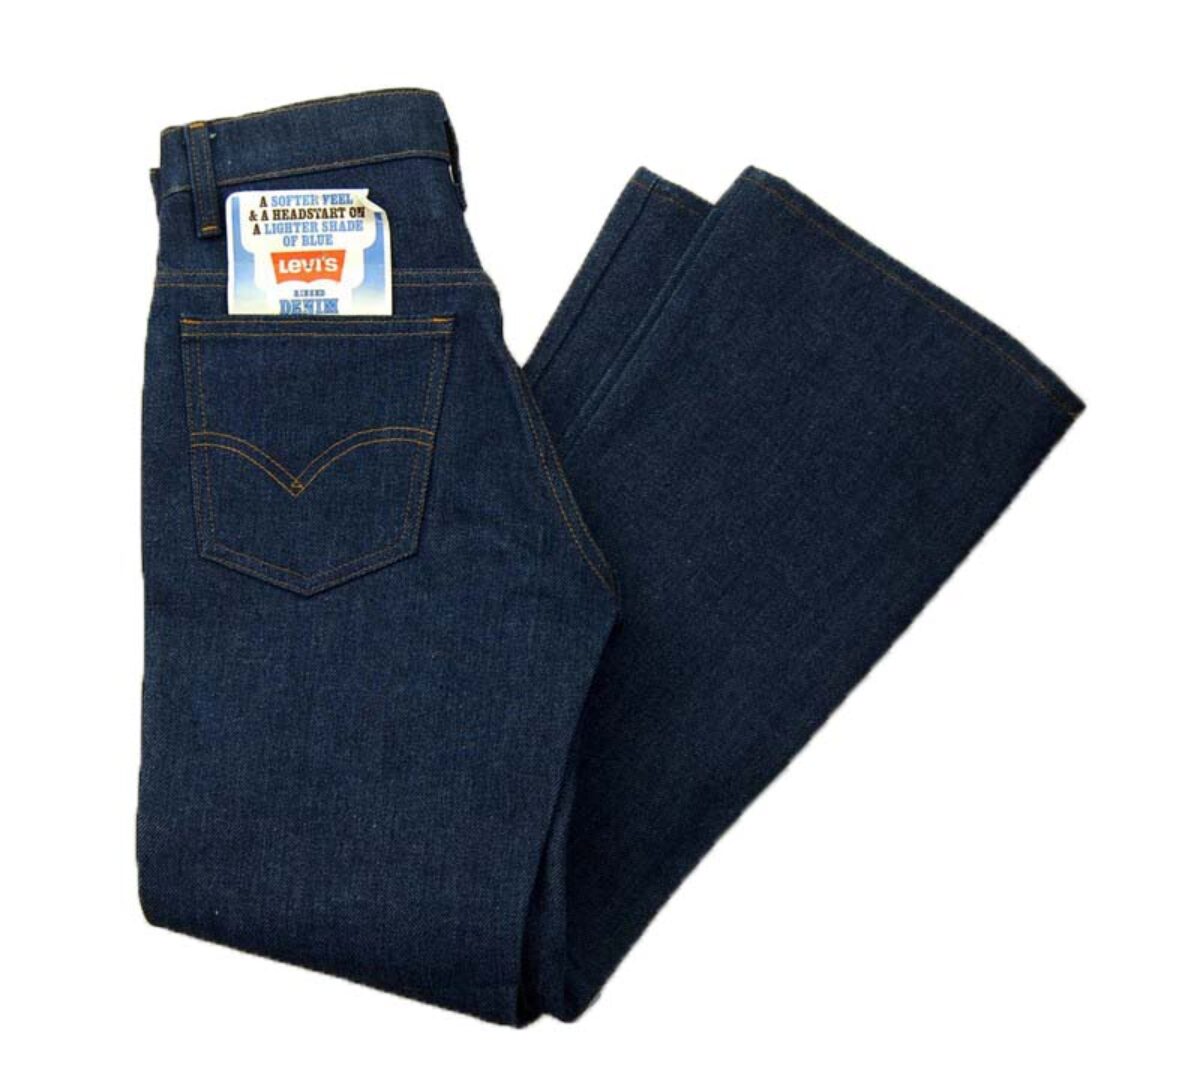 Vintage Levi's Pants Fits Youth 27 x 30 Blue Denim Jeans Student Fit 80s  Talon Zip